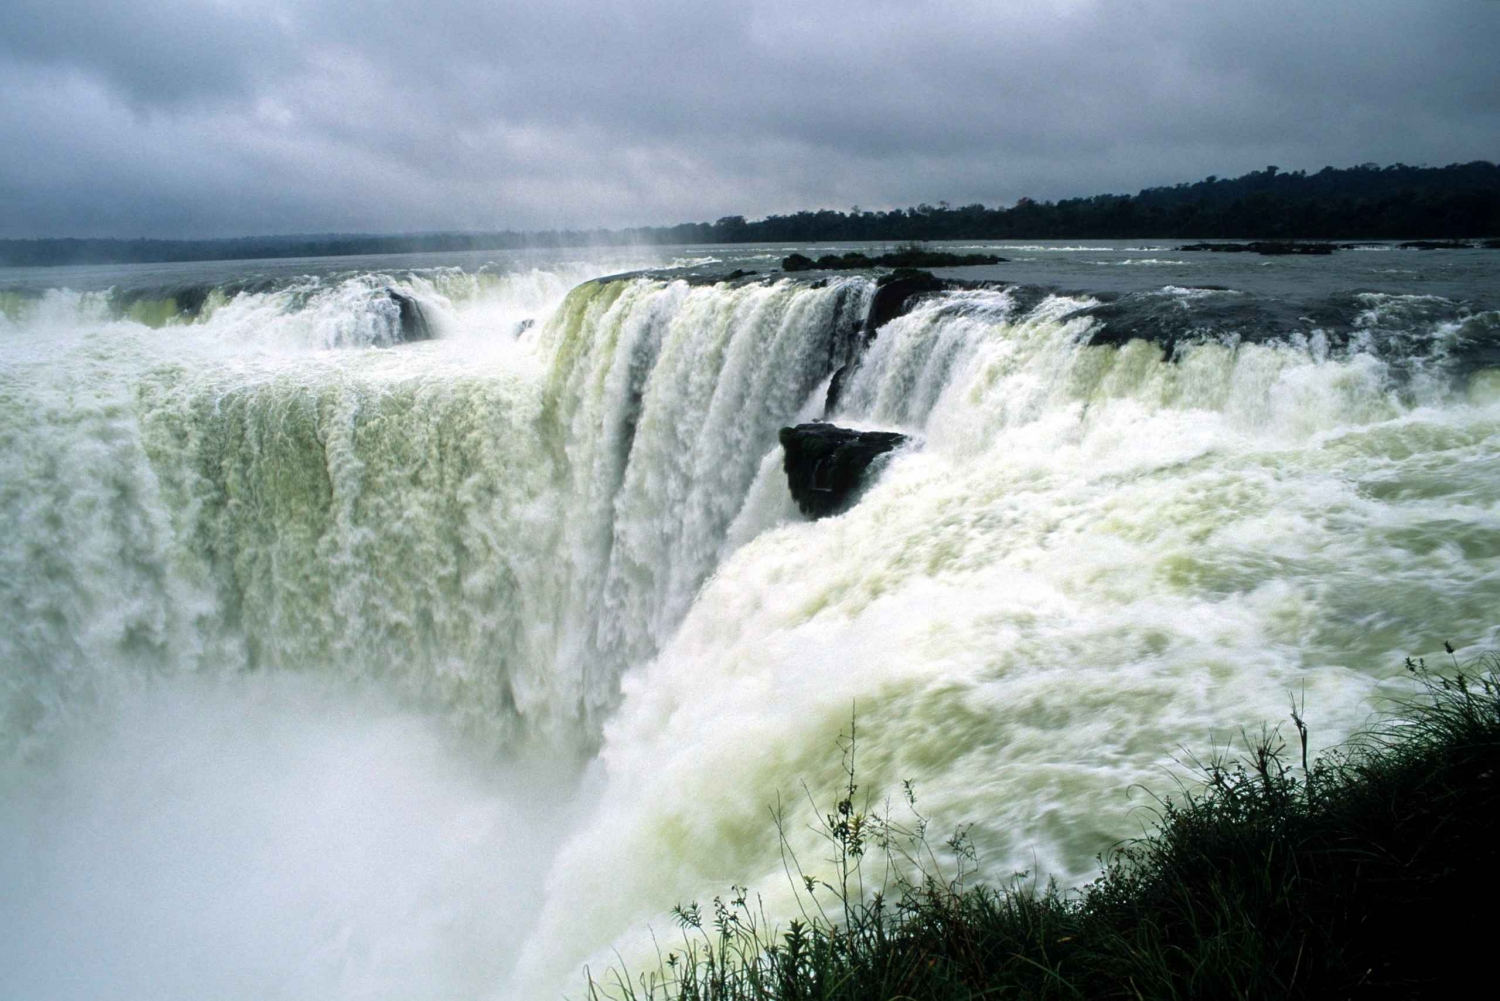 Argentyńska strona wodospadu Iguazu z Puerto Iguazu